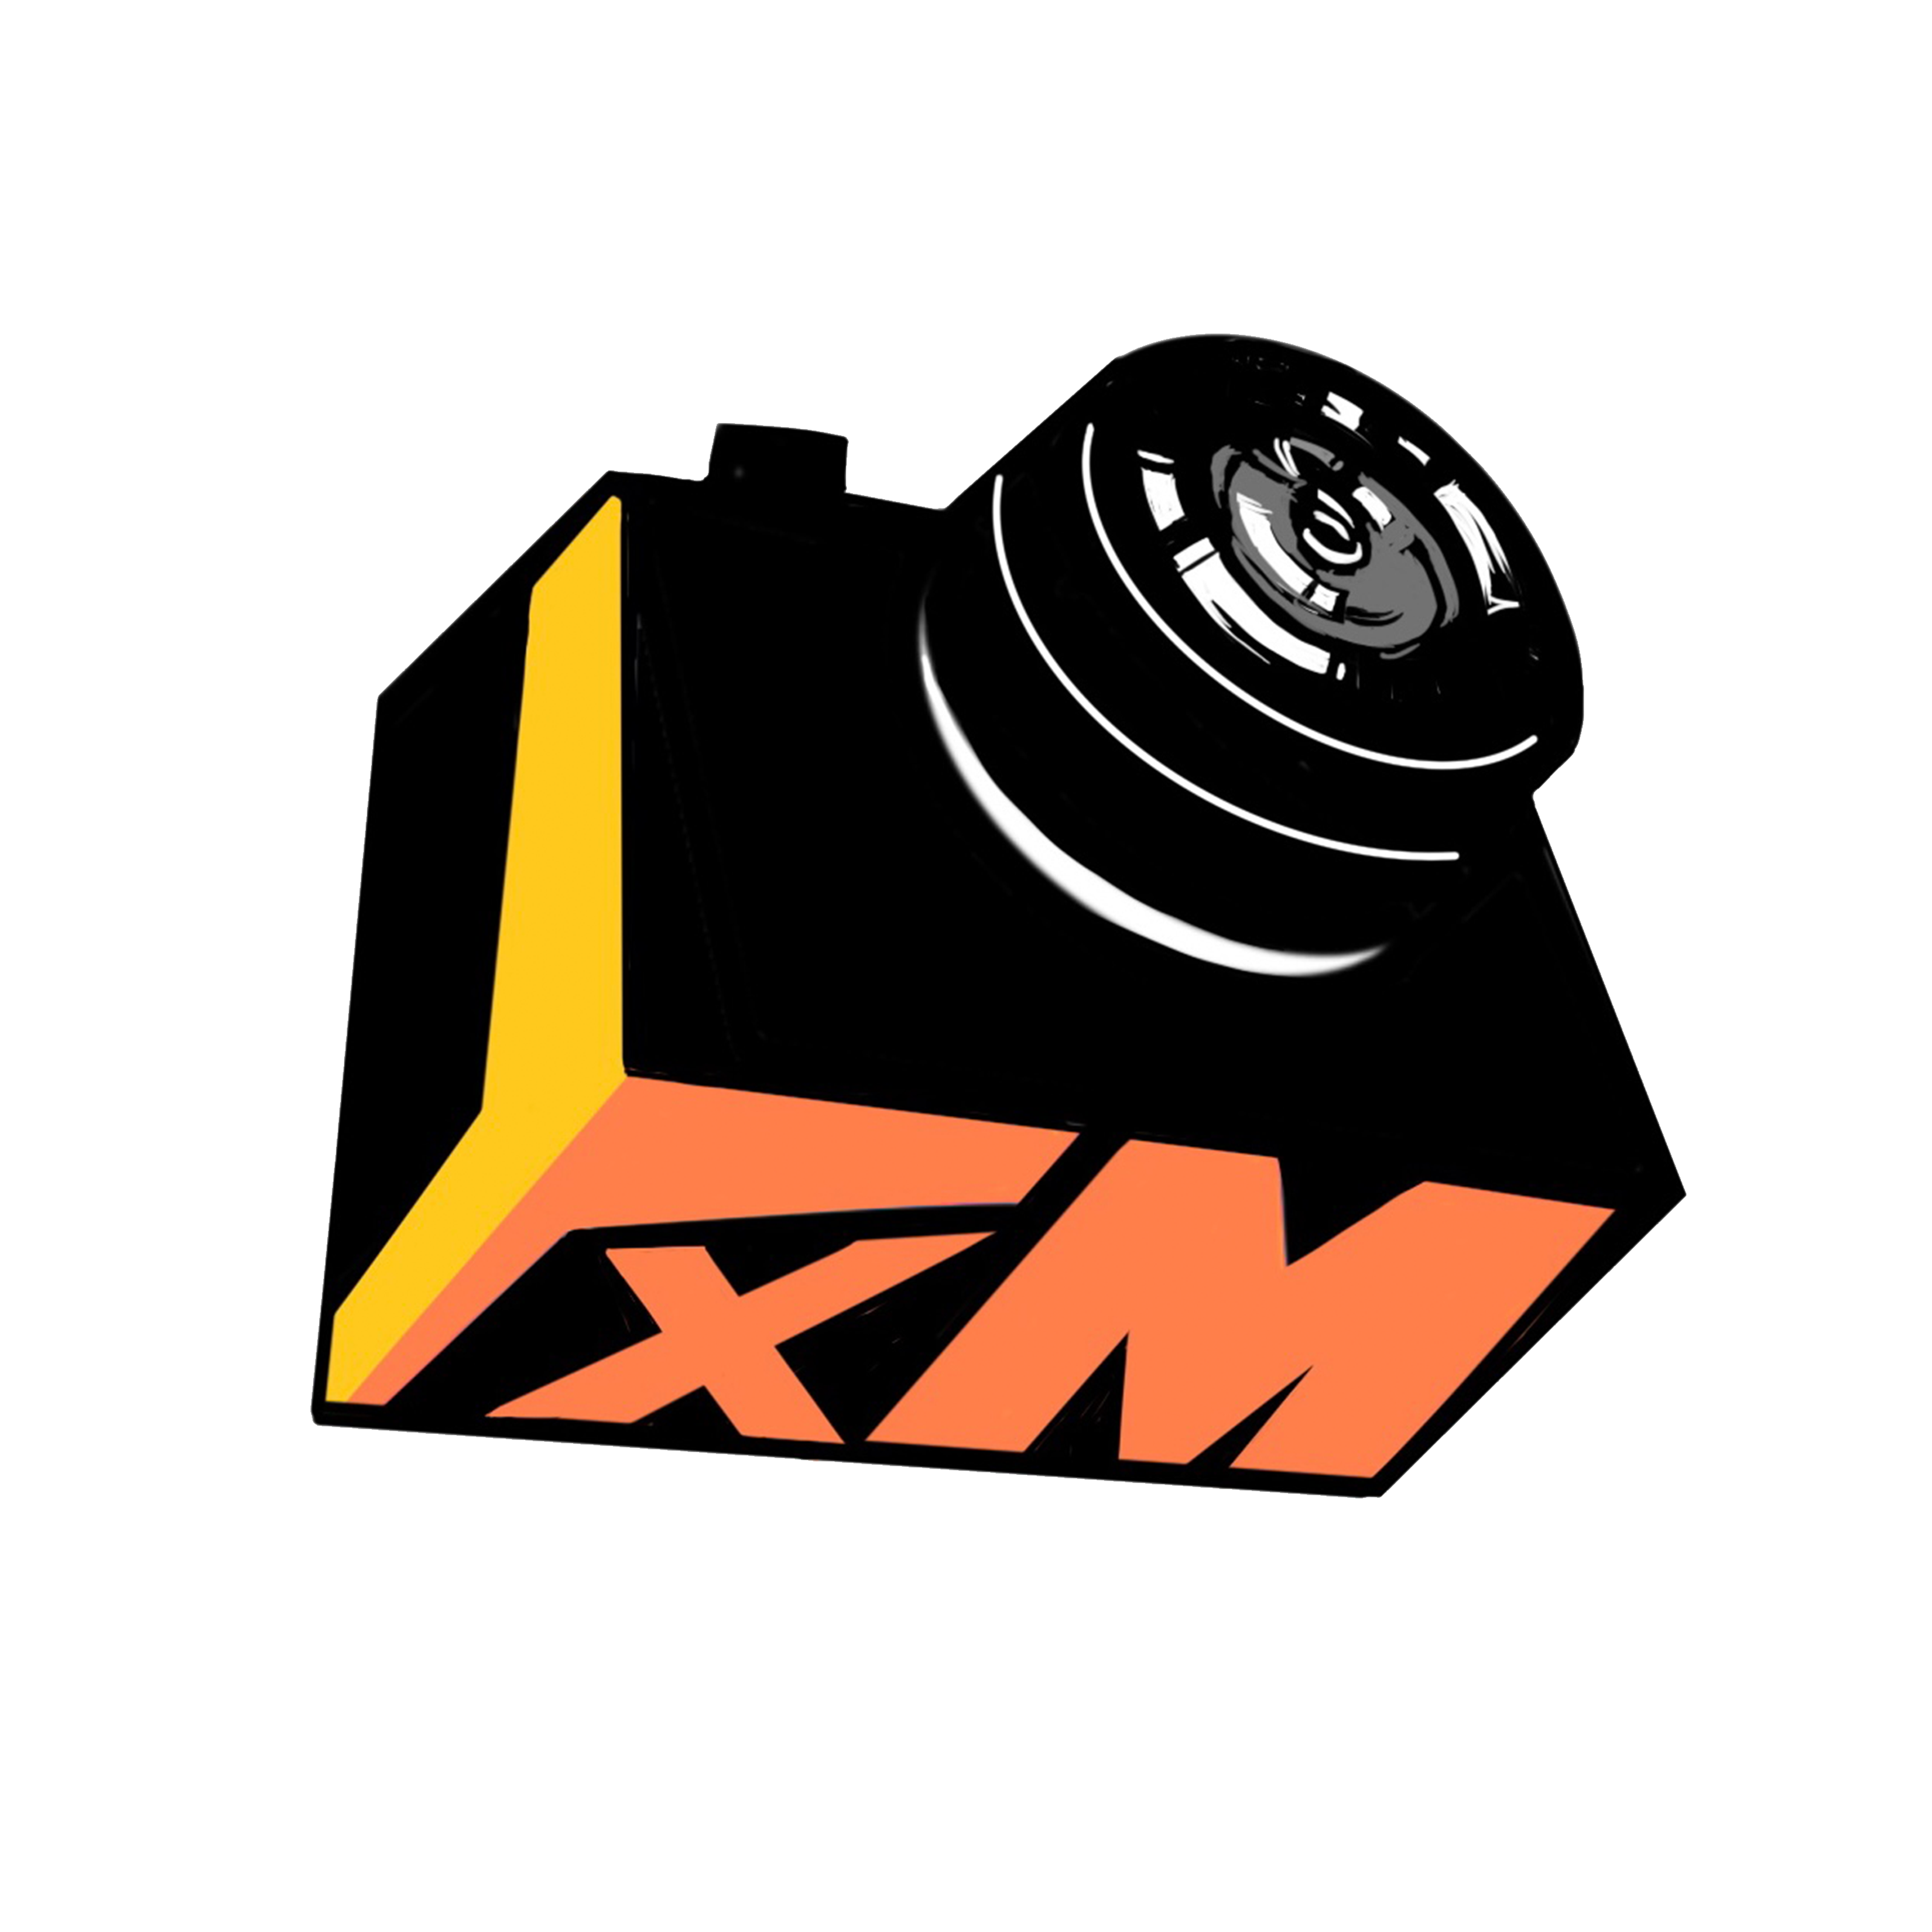 YxM Media